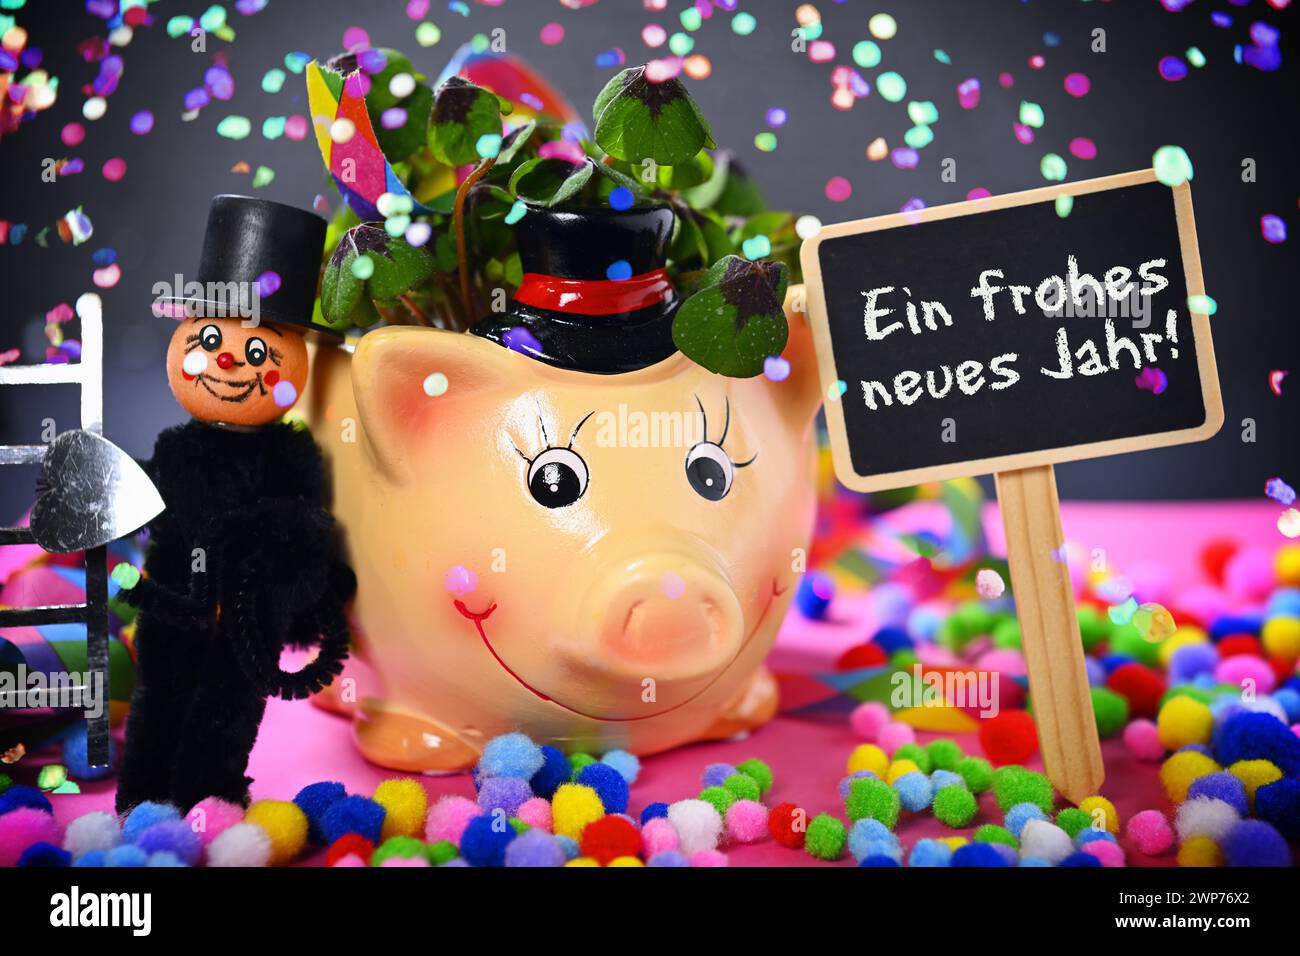 FOTOMONTAGE, Glücksschwein mit Kleeblättern, Schornsteinfegerfigur und Schild mit Aufschrift Ein frohes neues Jahr! mit Konfetti Stock Photo